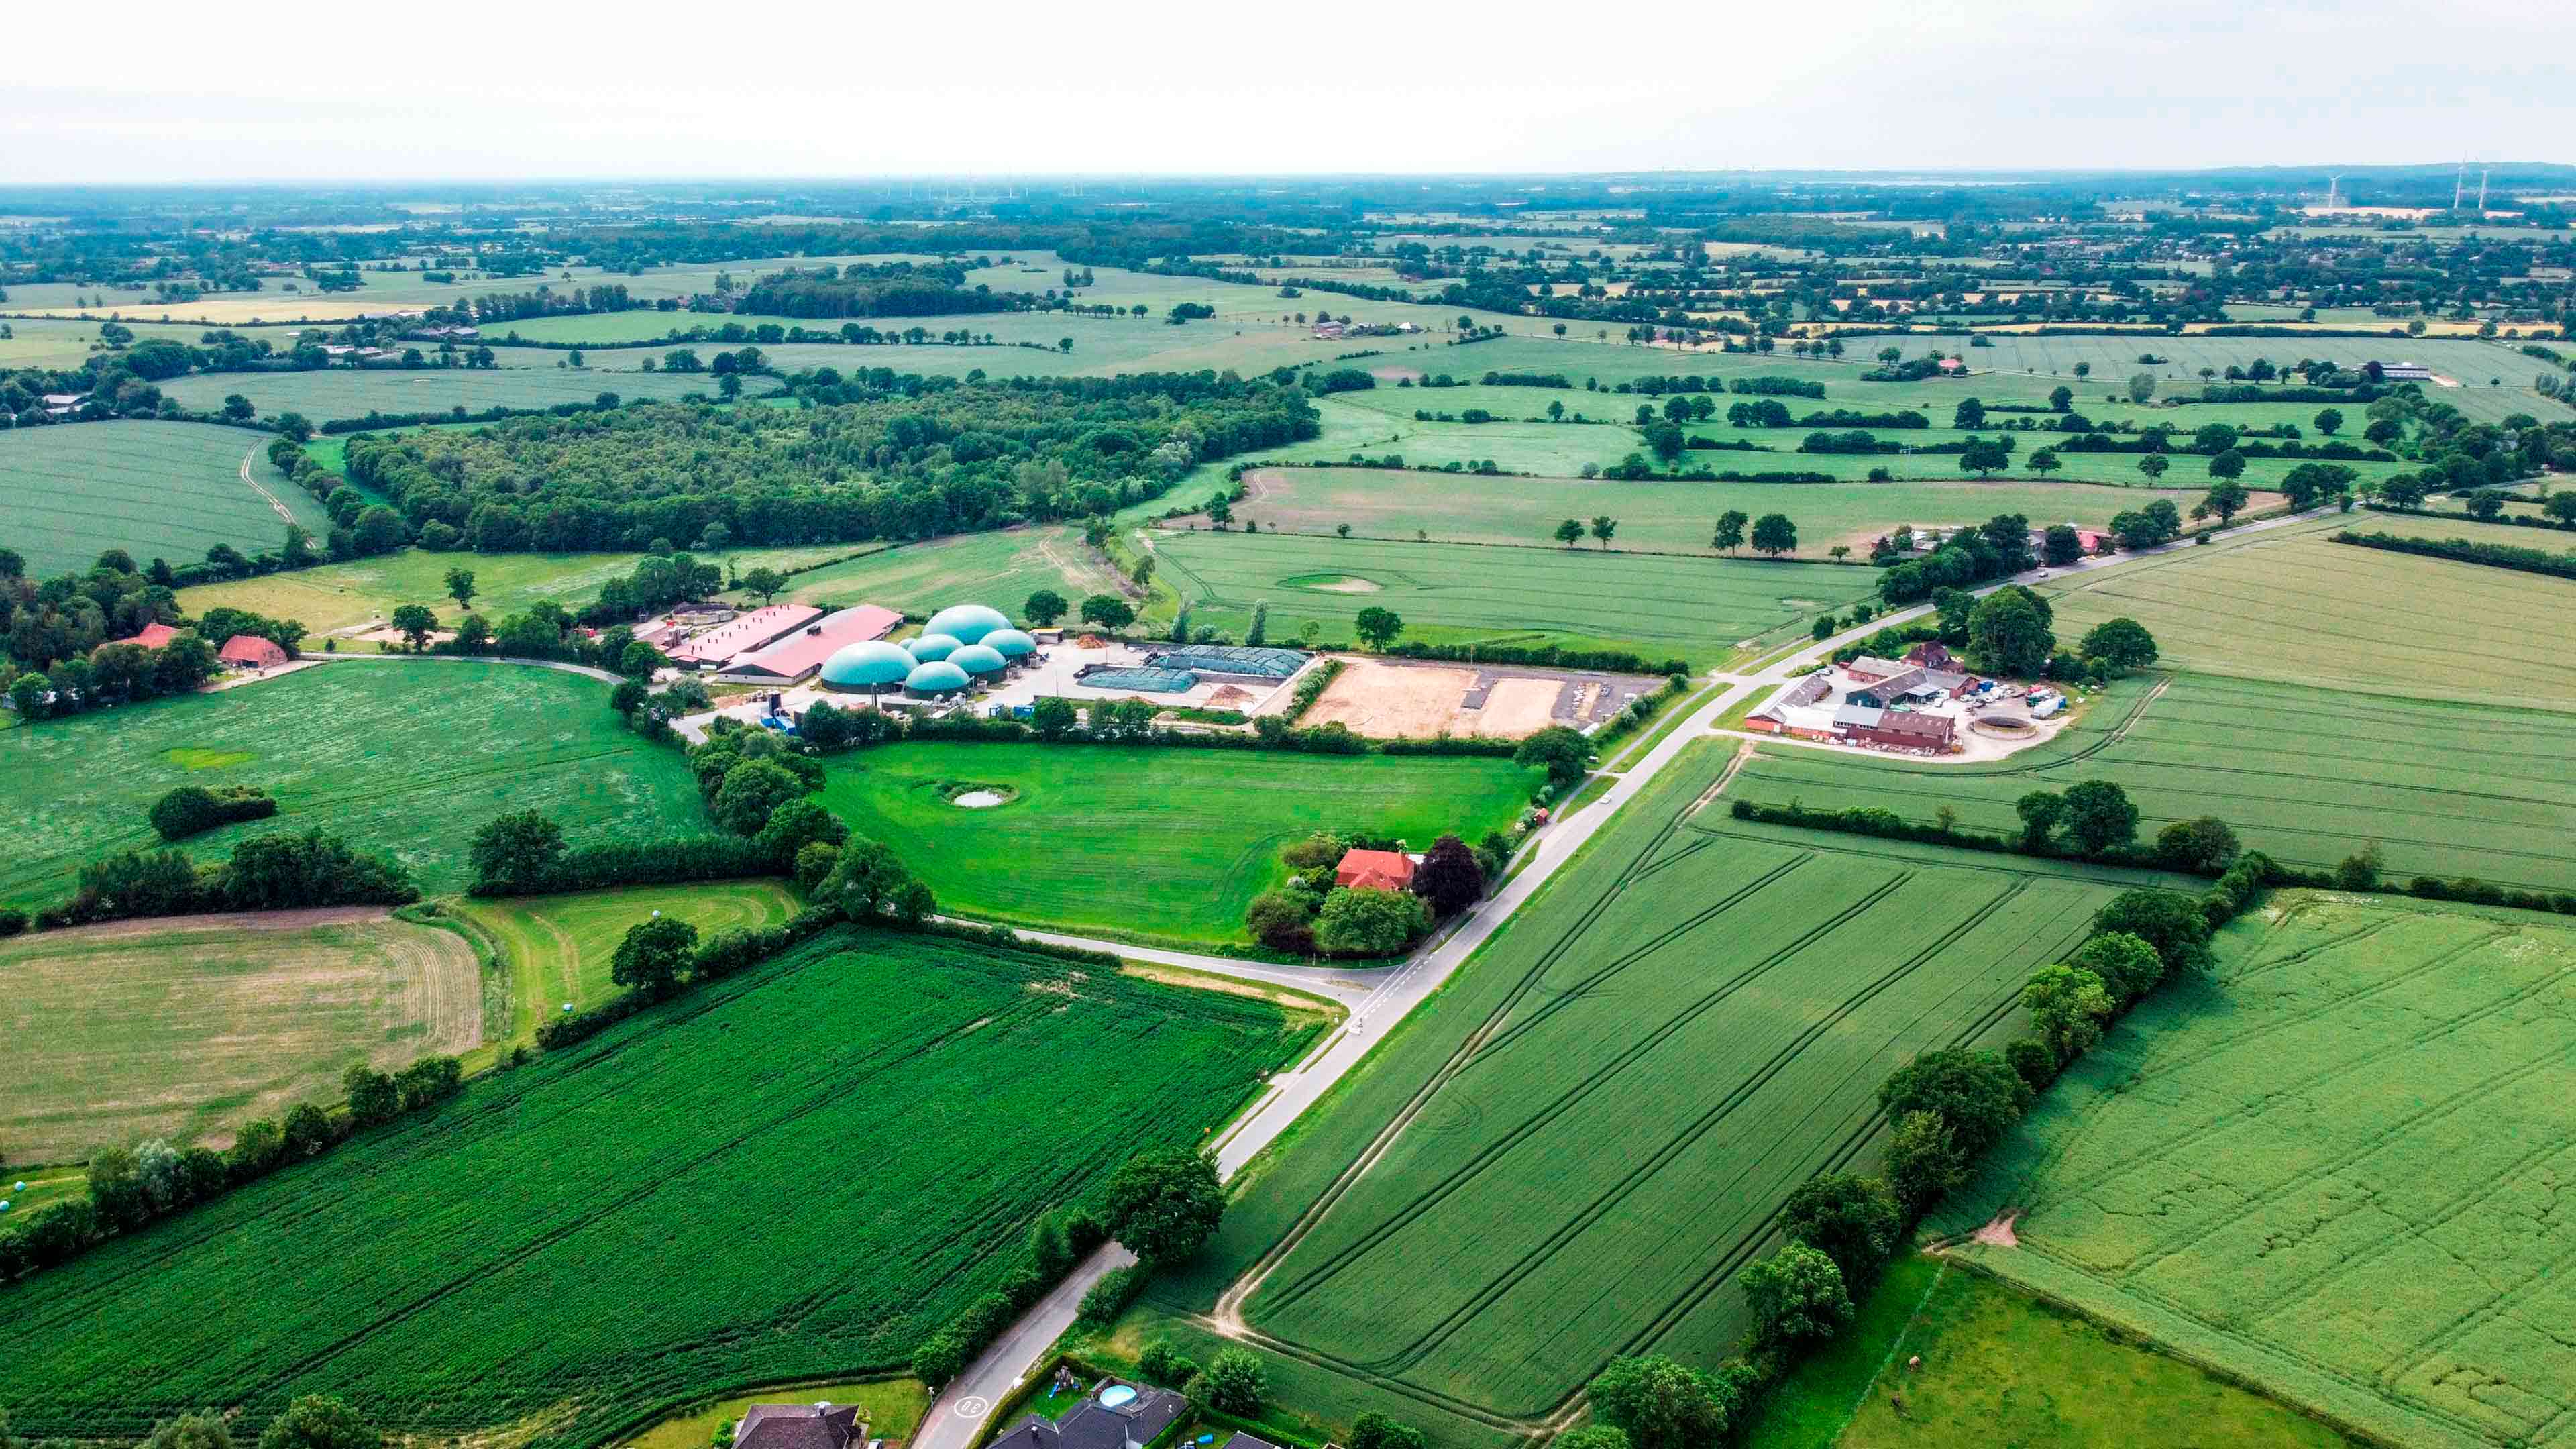 Luftaufnahme zeigt Biogasanlage, Wiesen und Bäume und eine Landstraße